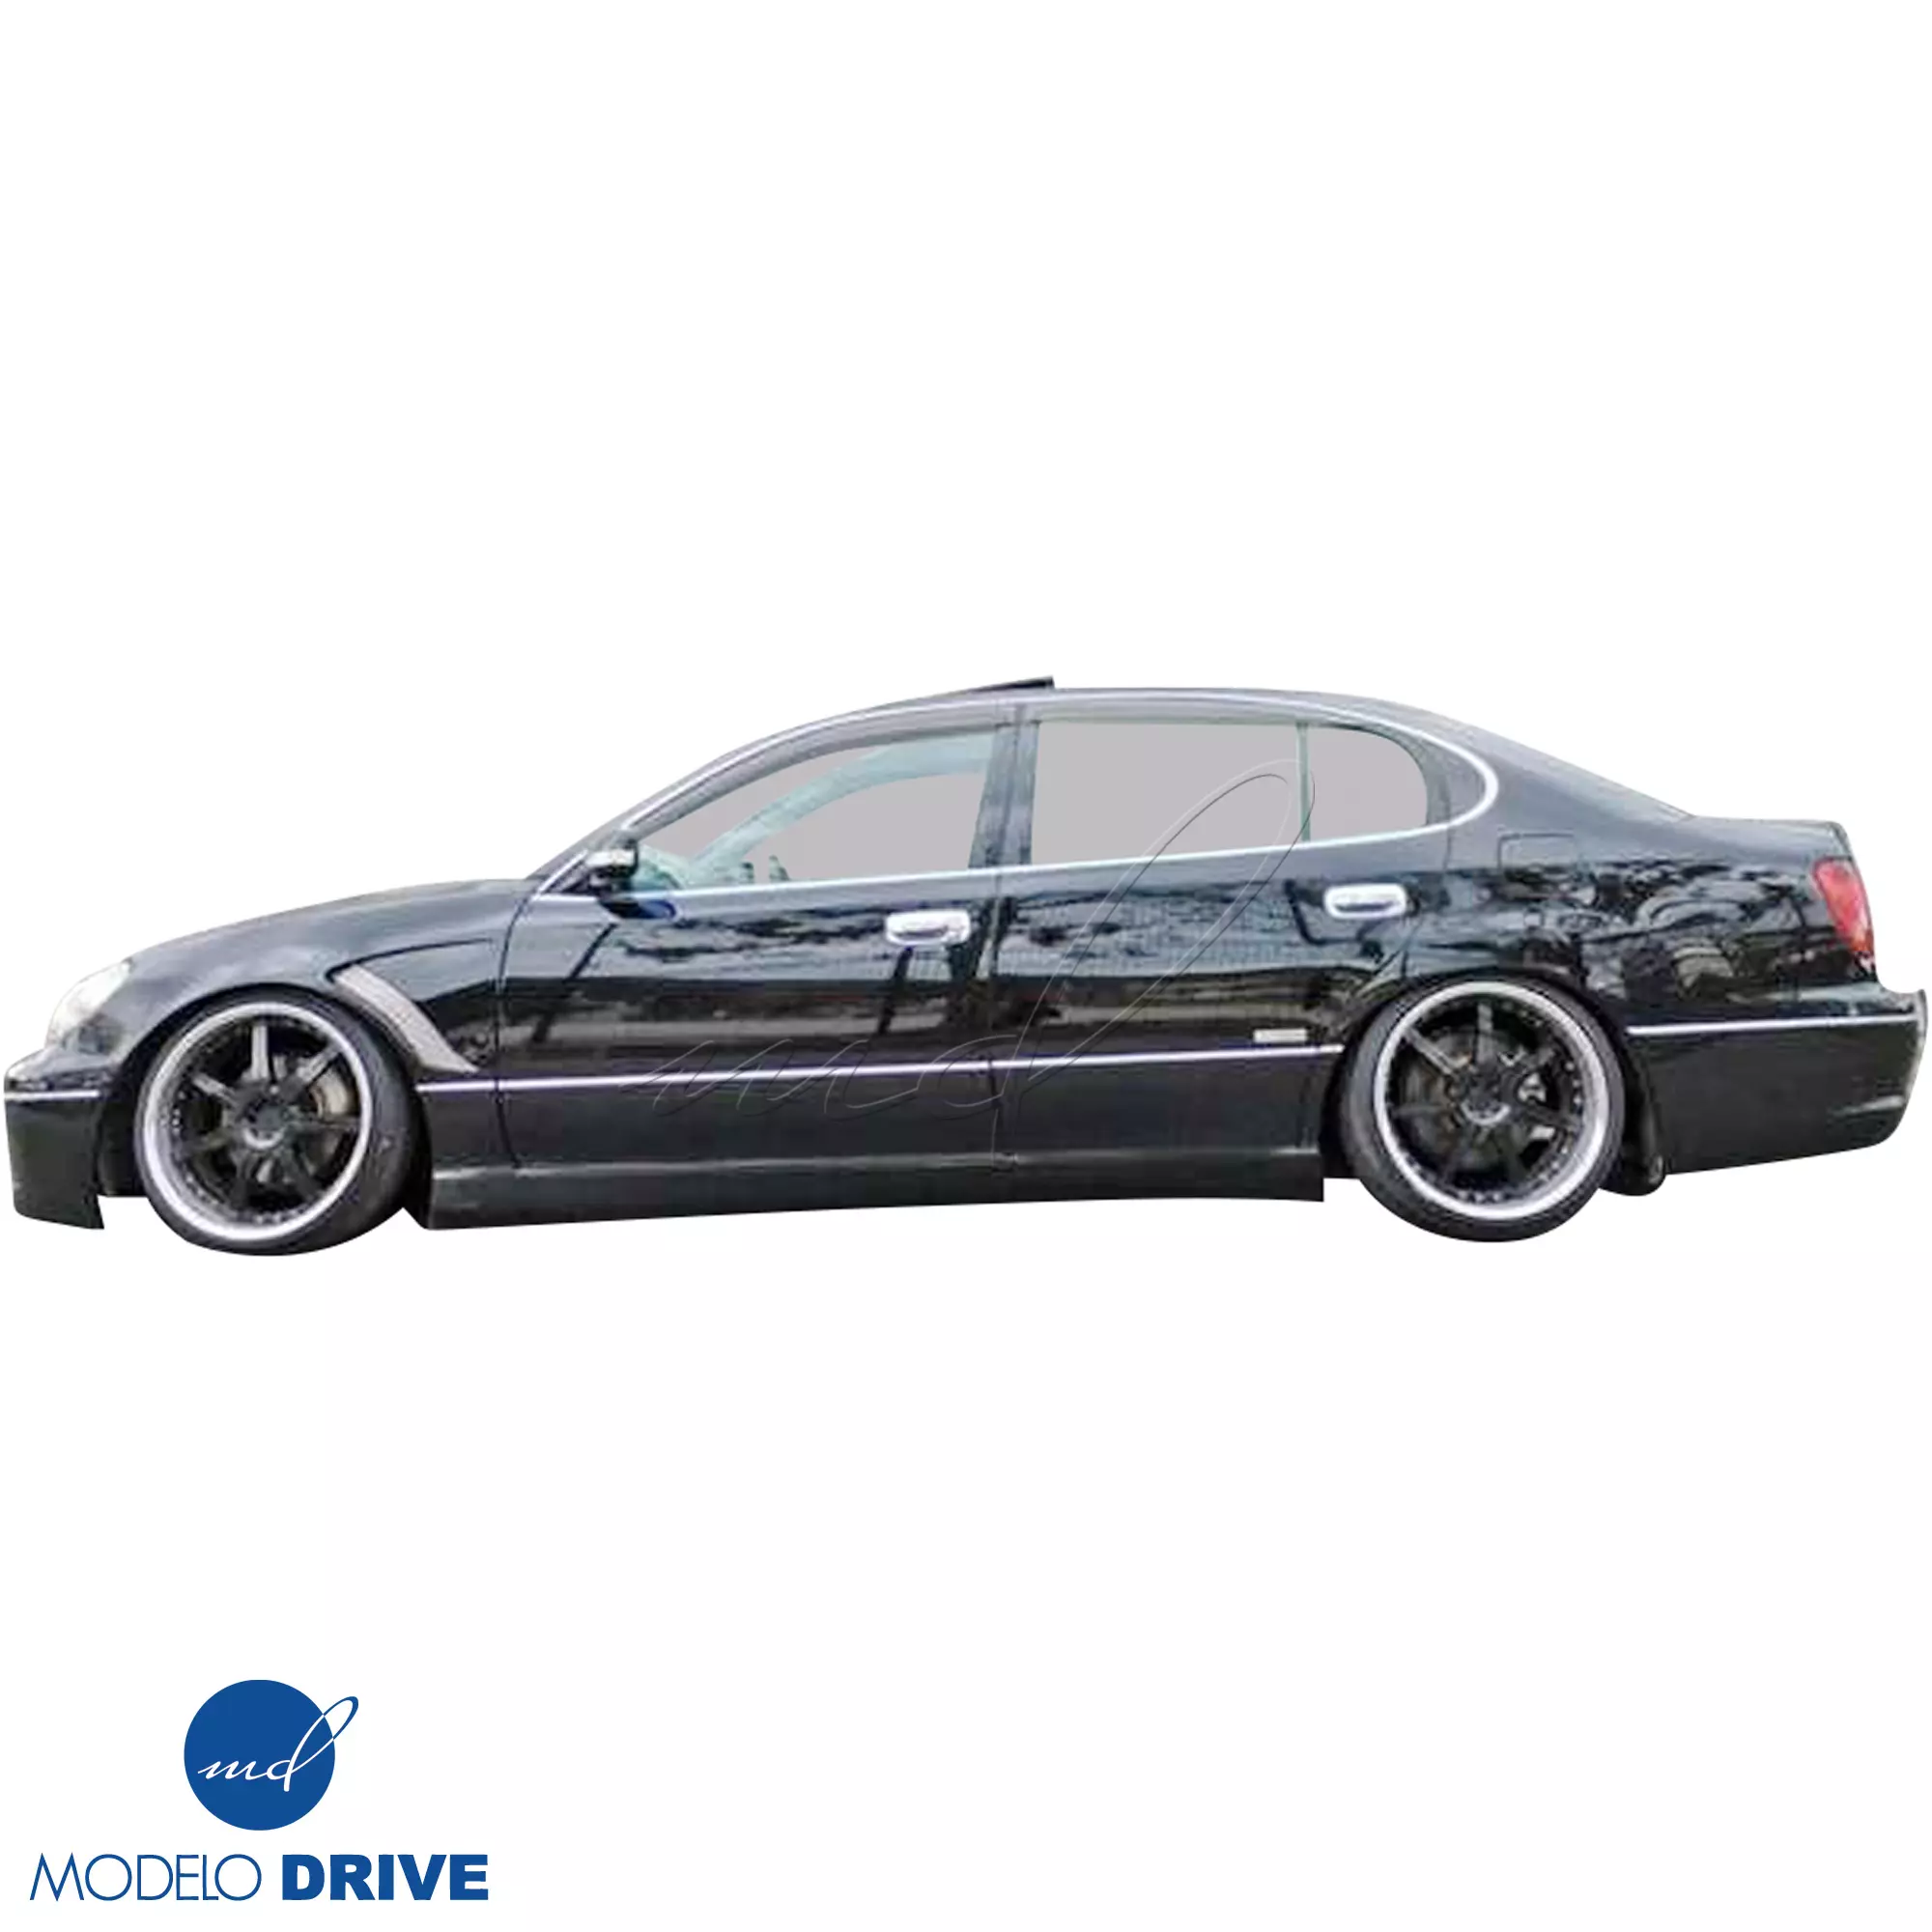 ModeloDrive FRP JUNT Front Bumper > Lexus GS Series GS400 GS300 1998-2005 - Image 24